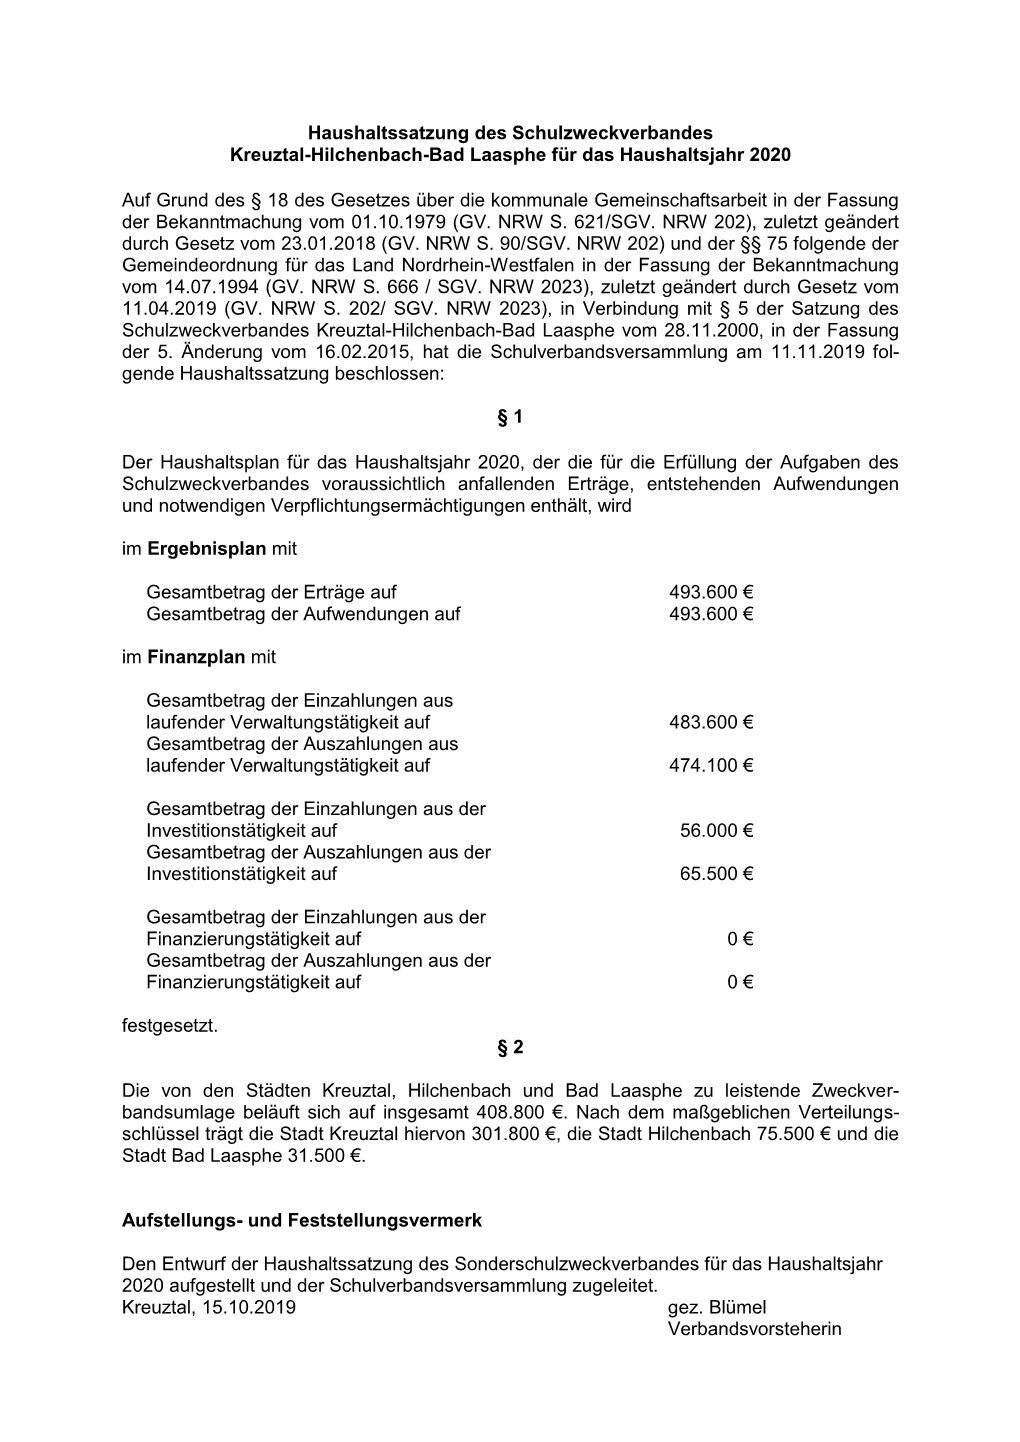 Haushaltssatzung Des Schulzweckverbandes Kreuztal-Hilchenbach-Bad Laasphe Für Das Haushaltsjahr 2020 Auf Grund Des § 18 Des Ge